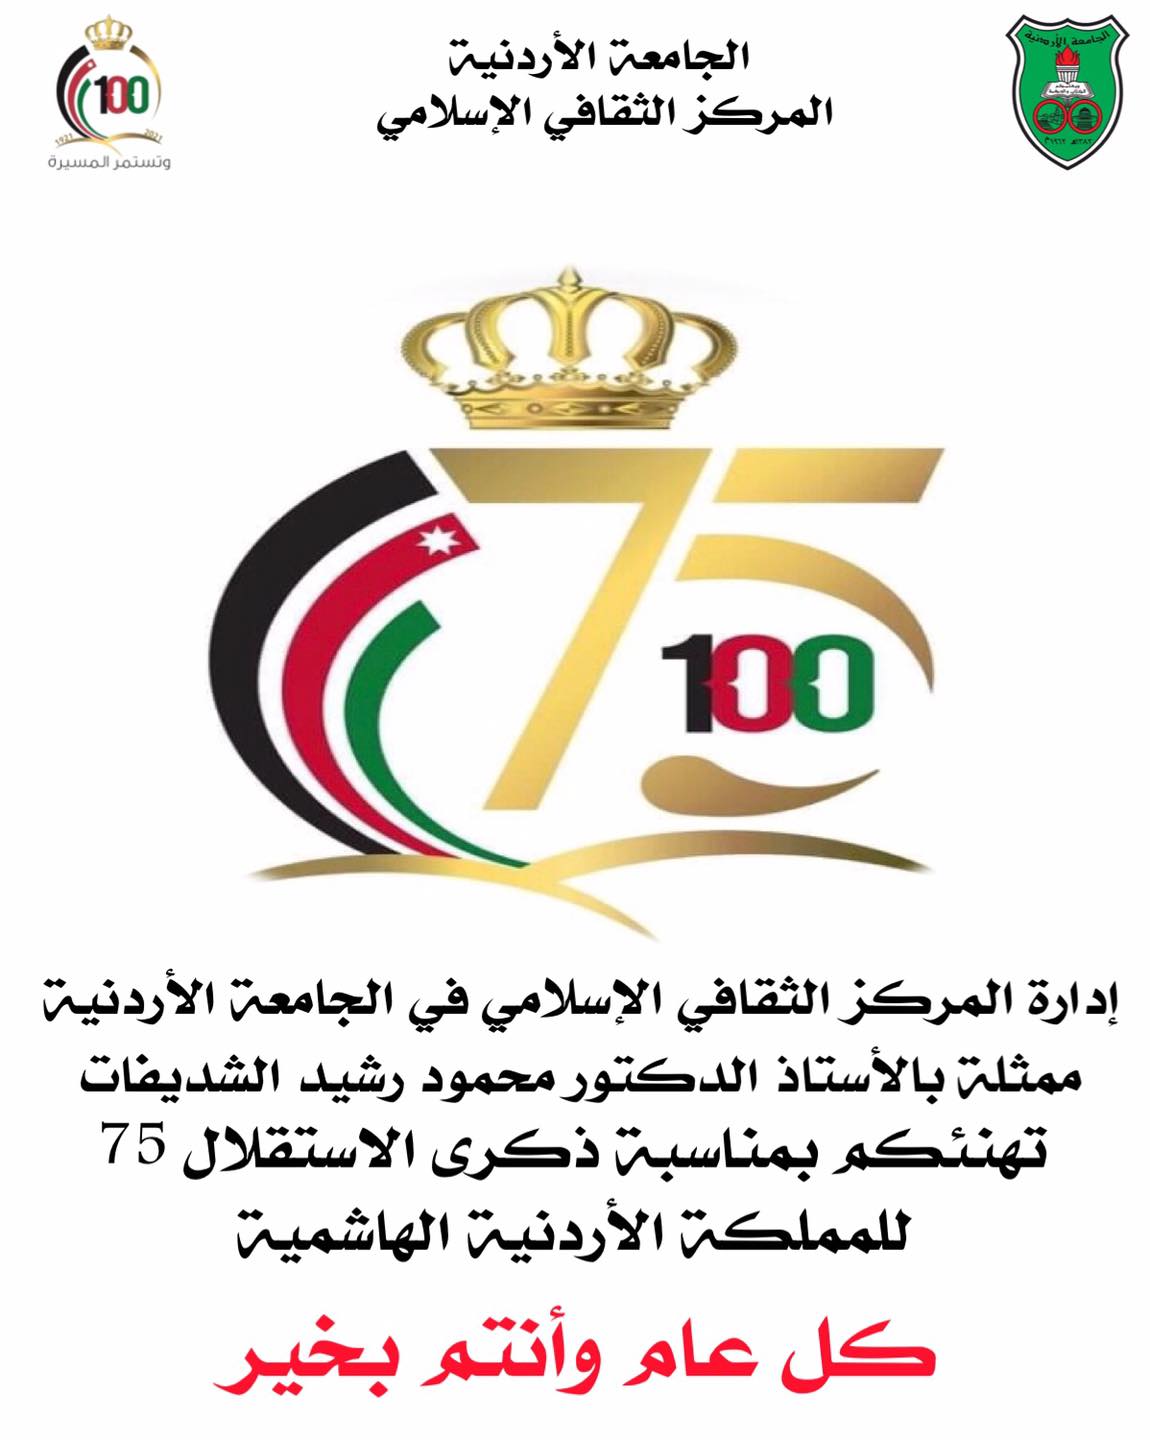 ذكرى الاستقلال 75 للملكة الأردنية الهاشمية.jpg